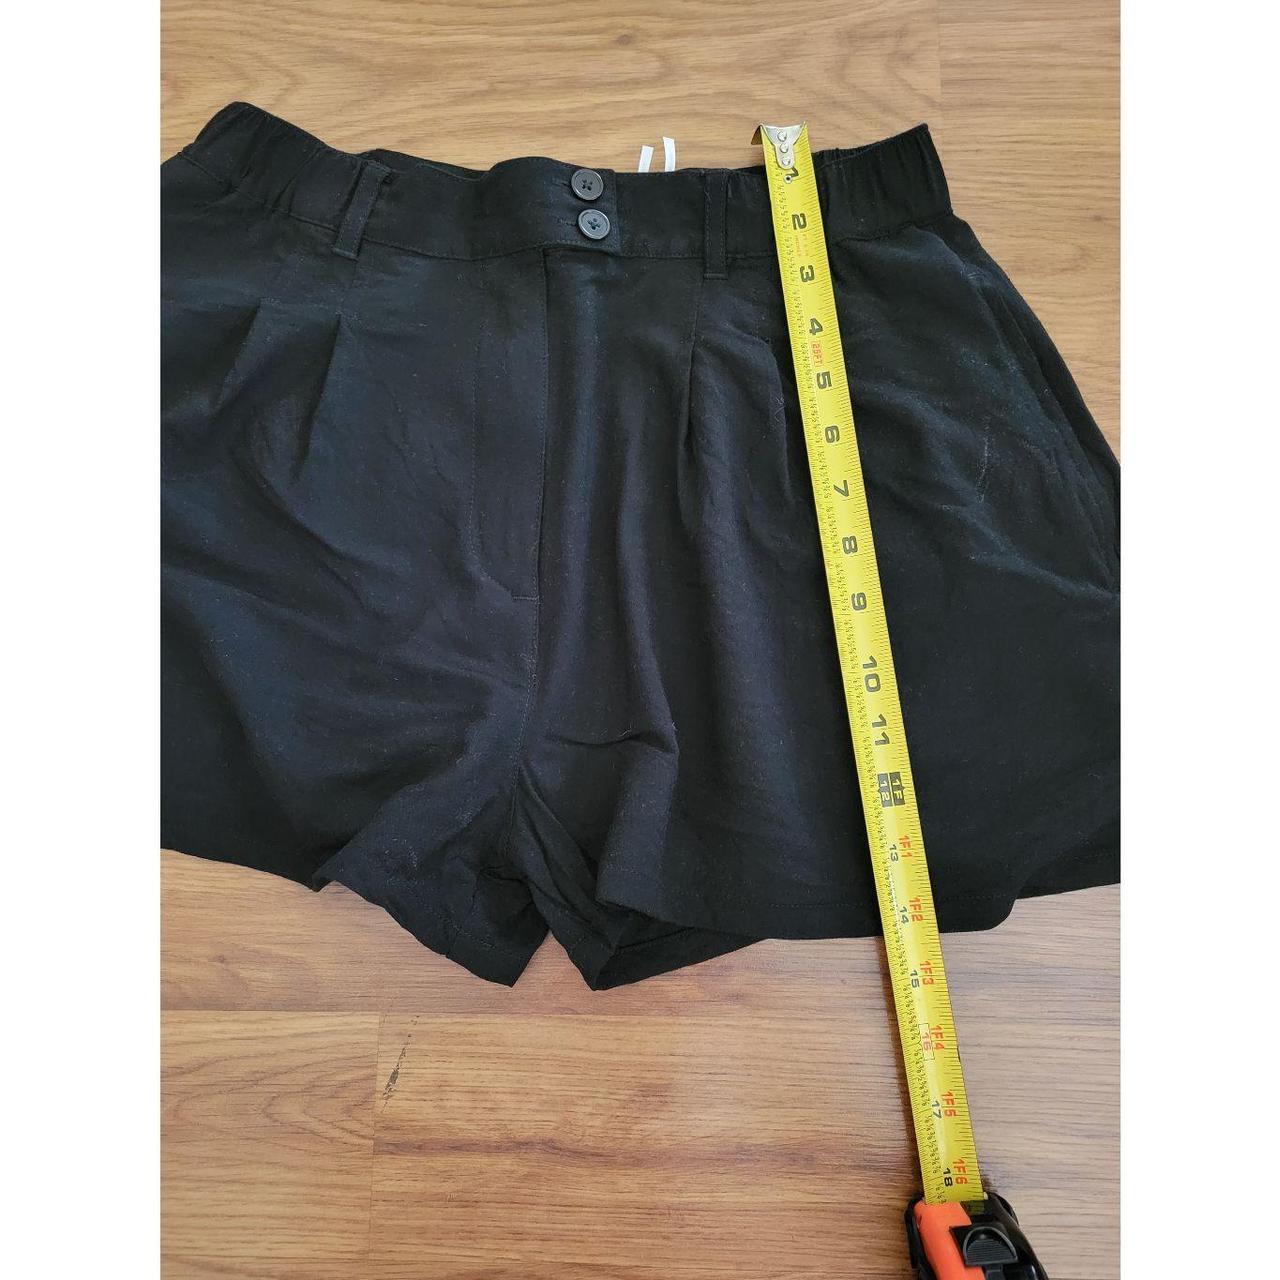 Product Image 4 - Kimchi Blue, pleated shorts. Lightweight,